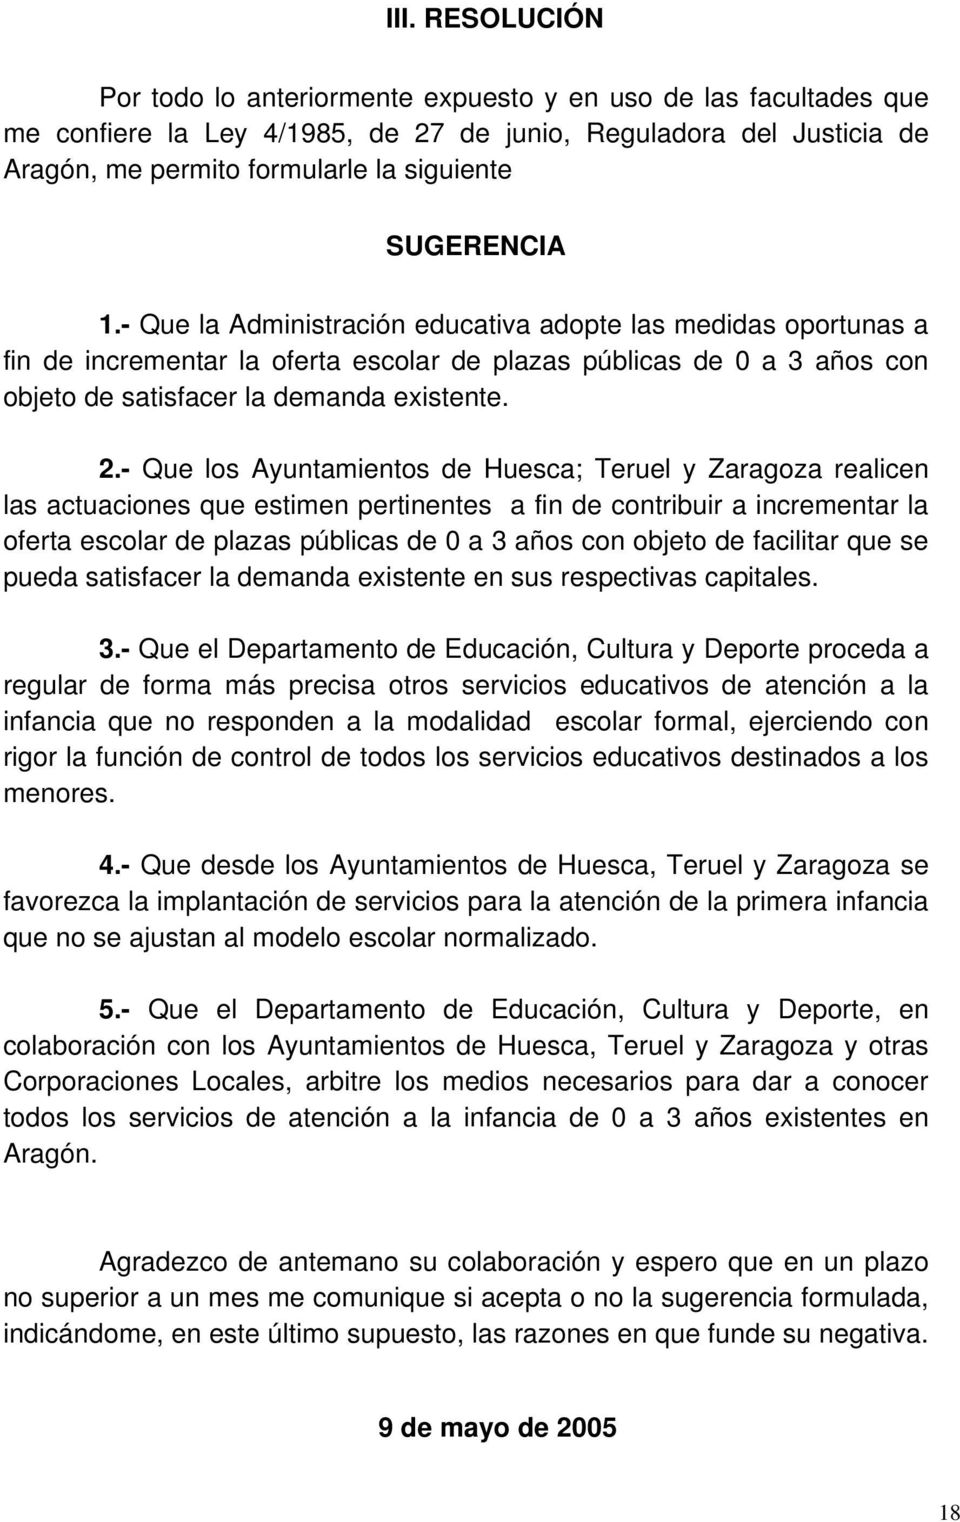 - Que los Ayuntamientos de Huesca; Teruel y Zaragoza realicen las actuaciones que estimen pertinentes a fin de contribuir a incrementar la oferta escolar de plazas públicas de 0 a 3 años con objeto